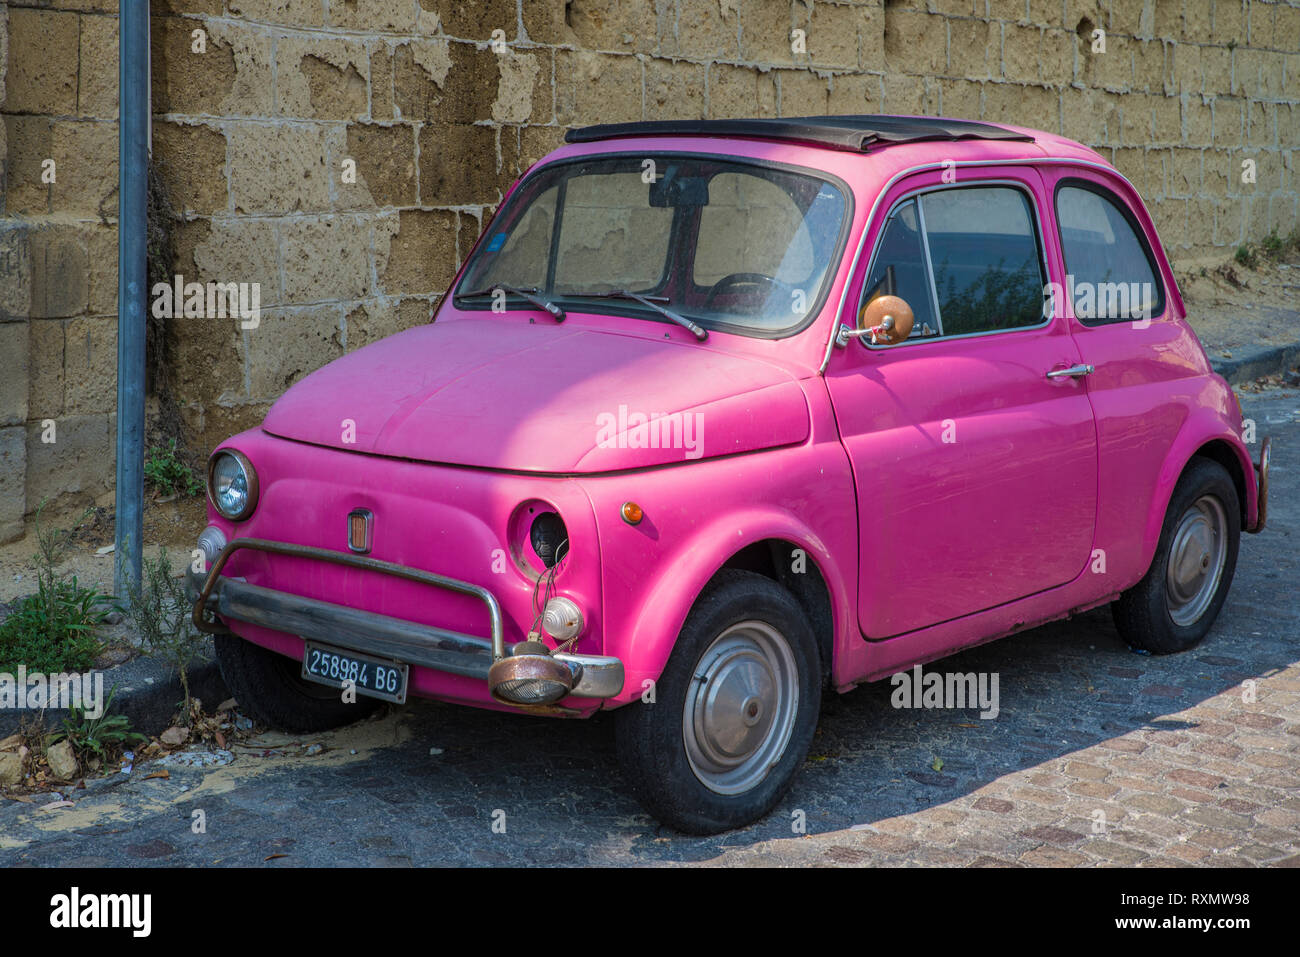 Neapel, Italien - 14 August 2015: Oldtimer pink Fiat Nuova 500 Auto steht auf den Straßen von Neapel. Seine Scheinwerfer gebrochen sind. Stockfoto